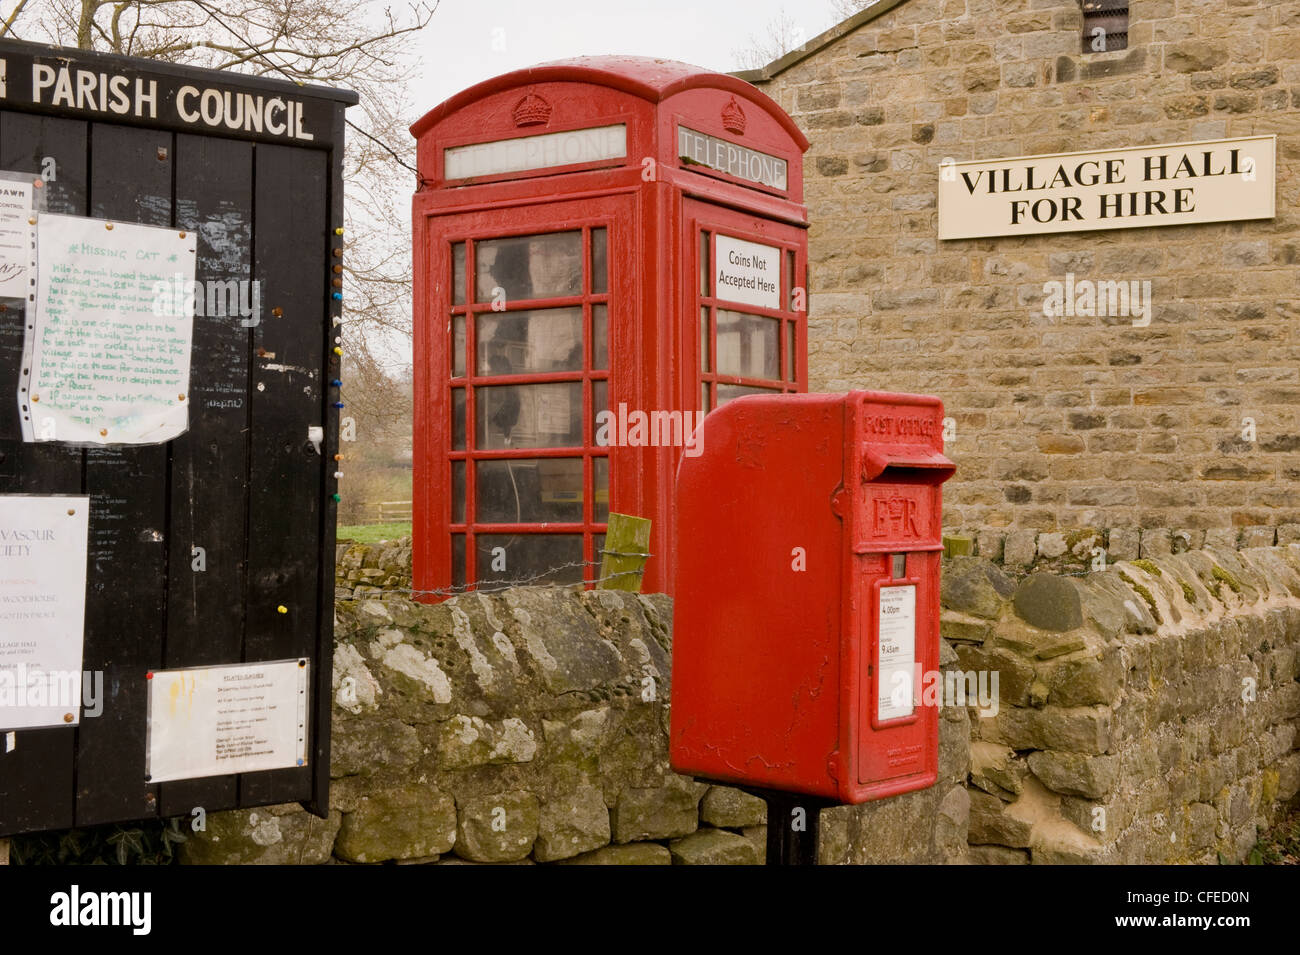 Stadtmöblierung - Pfarrei noticeboard, rote Post Box & iconic K6 Telefon, indem Sie die Village Hall (zur Miete) unterzeichnen - Leathley, North Yorkshire, England, Großbritannien Stockfoto